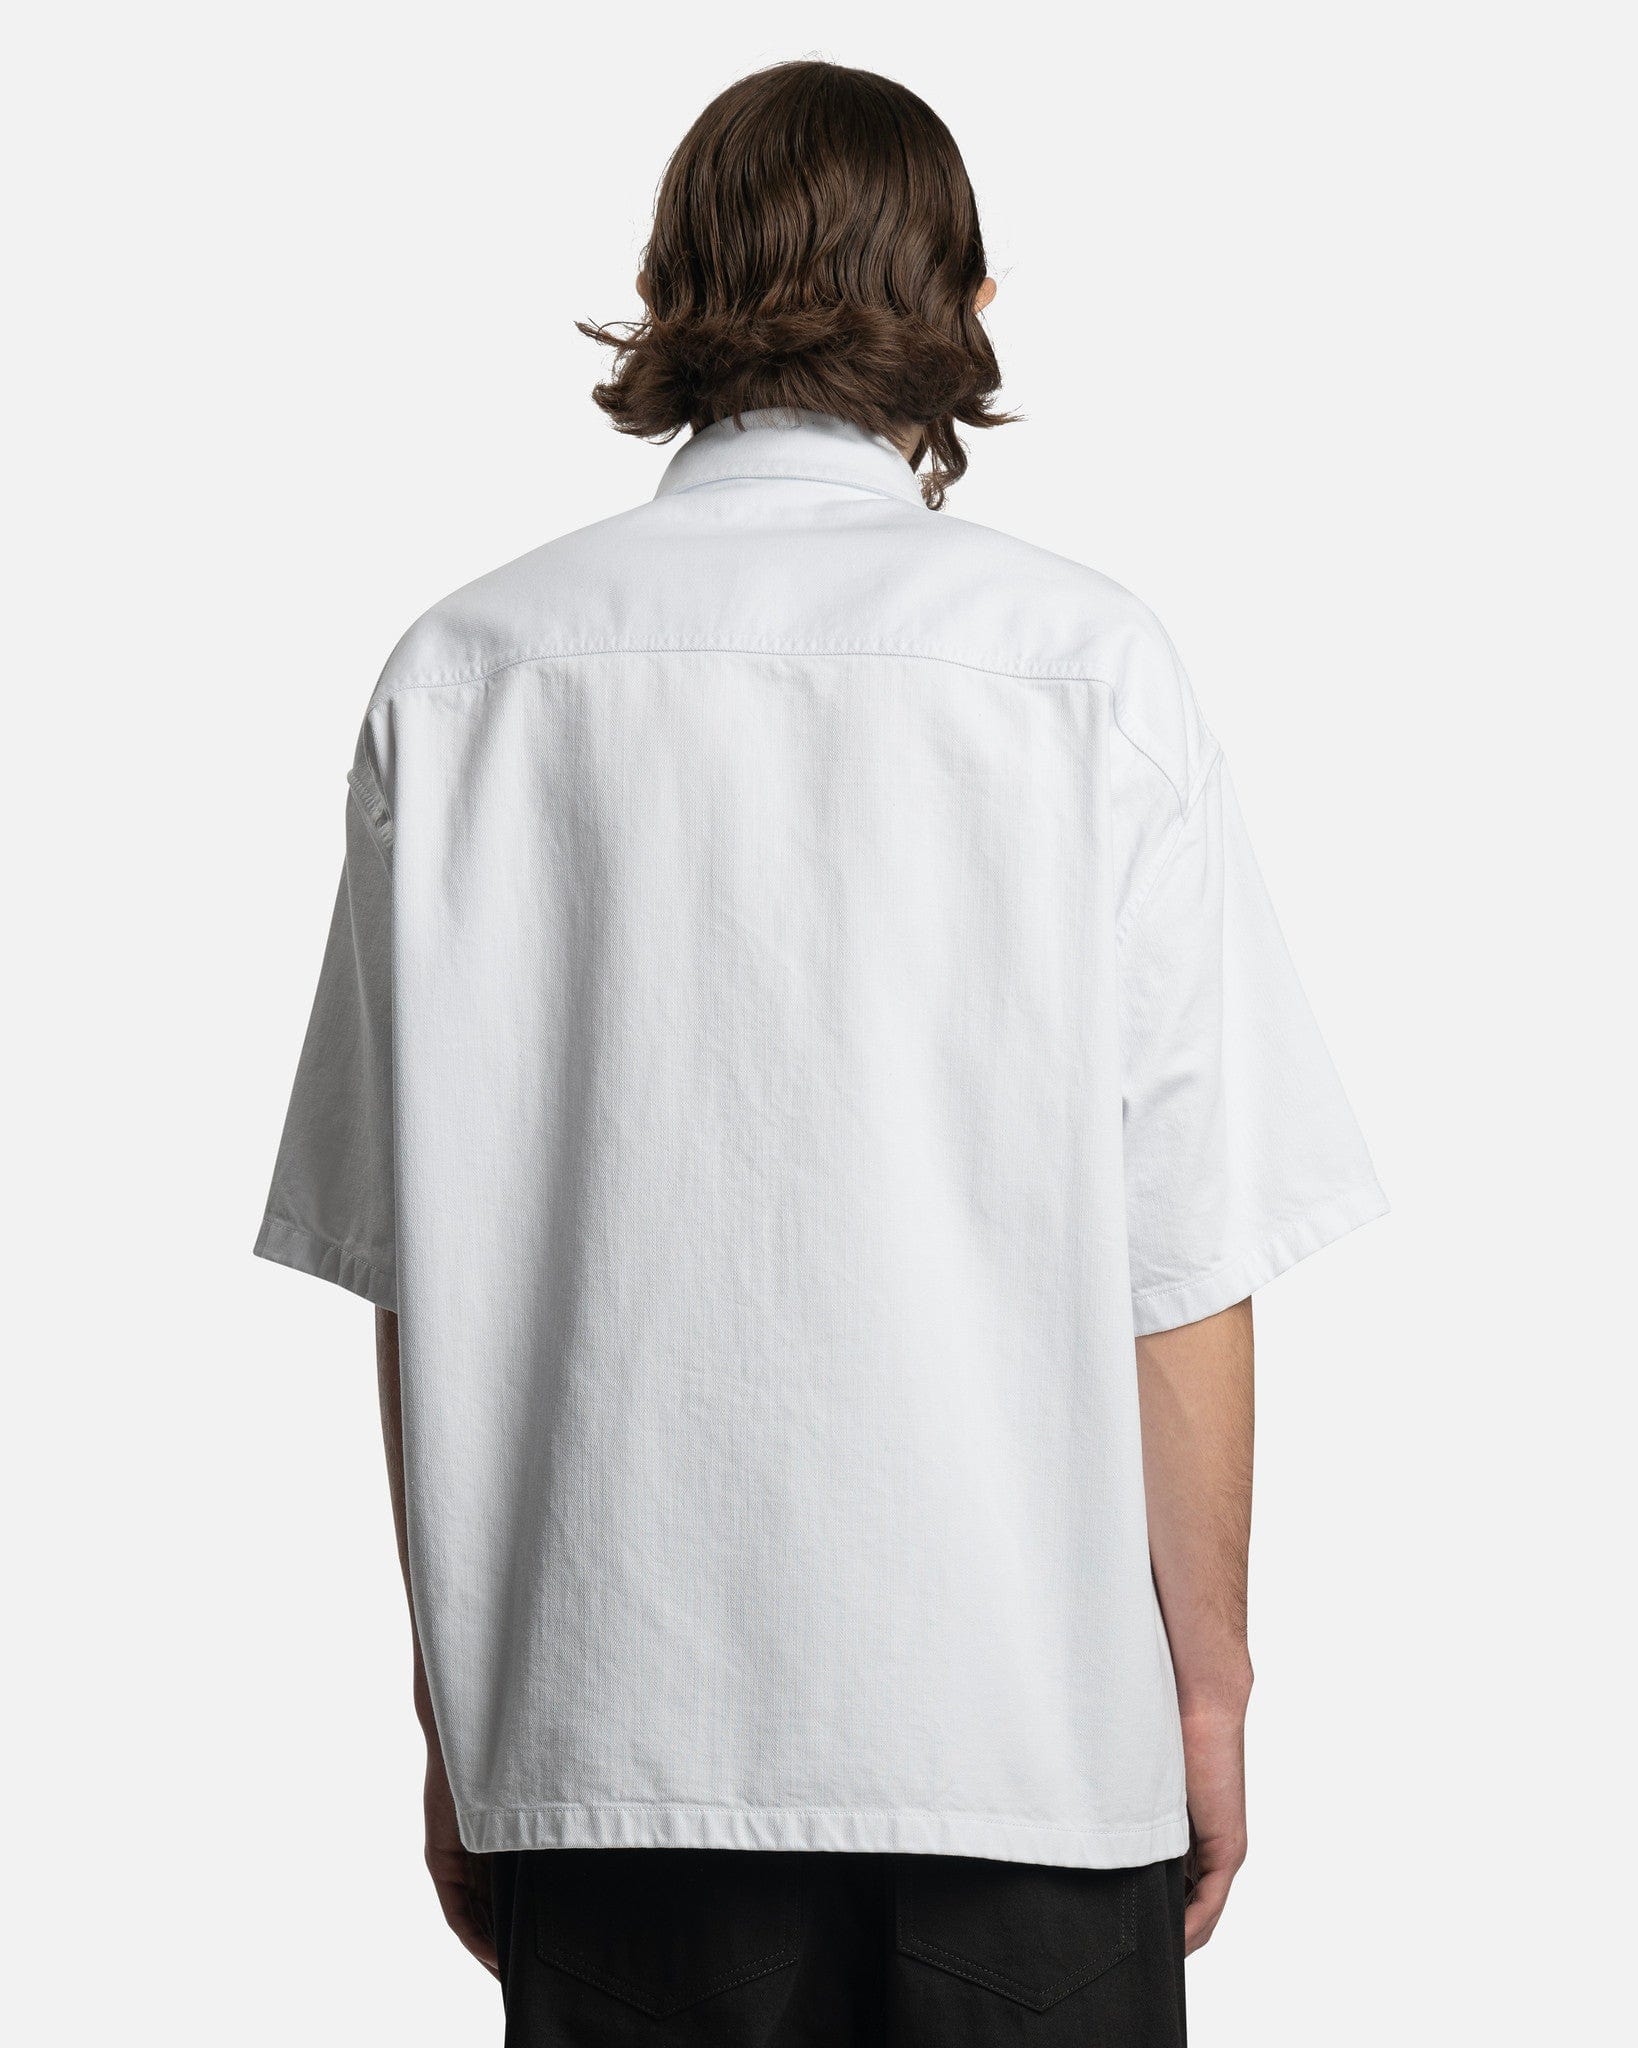 Raf Simons Men's Shirts Oversized Short Sleeved Denim Shirt in White